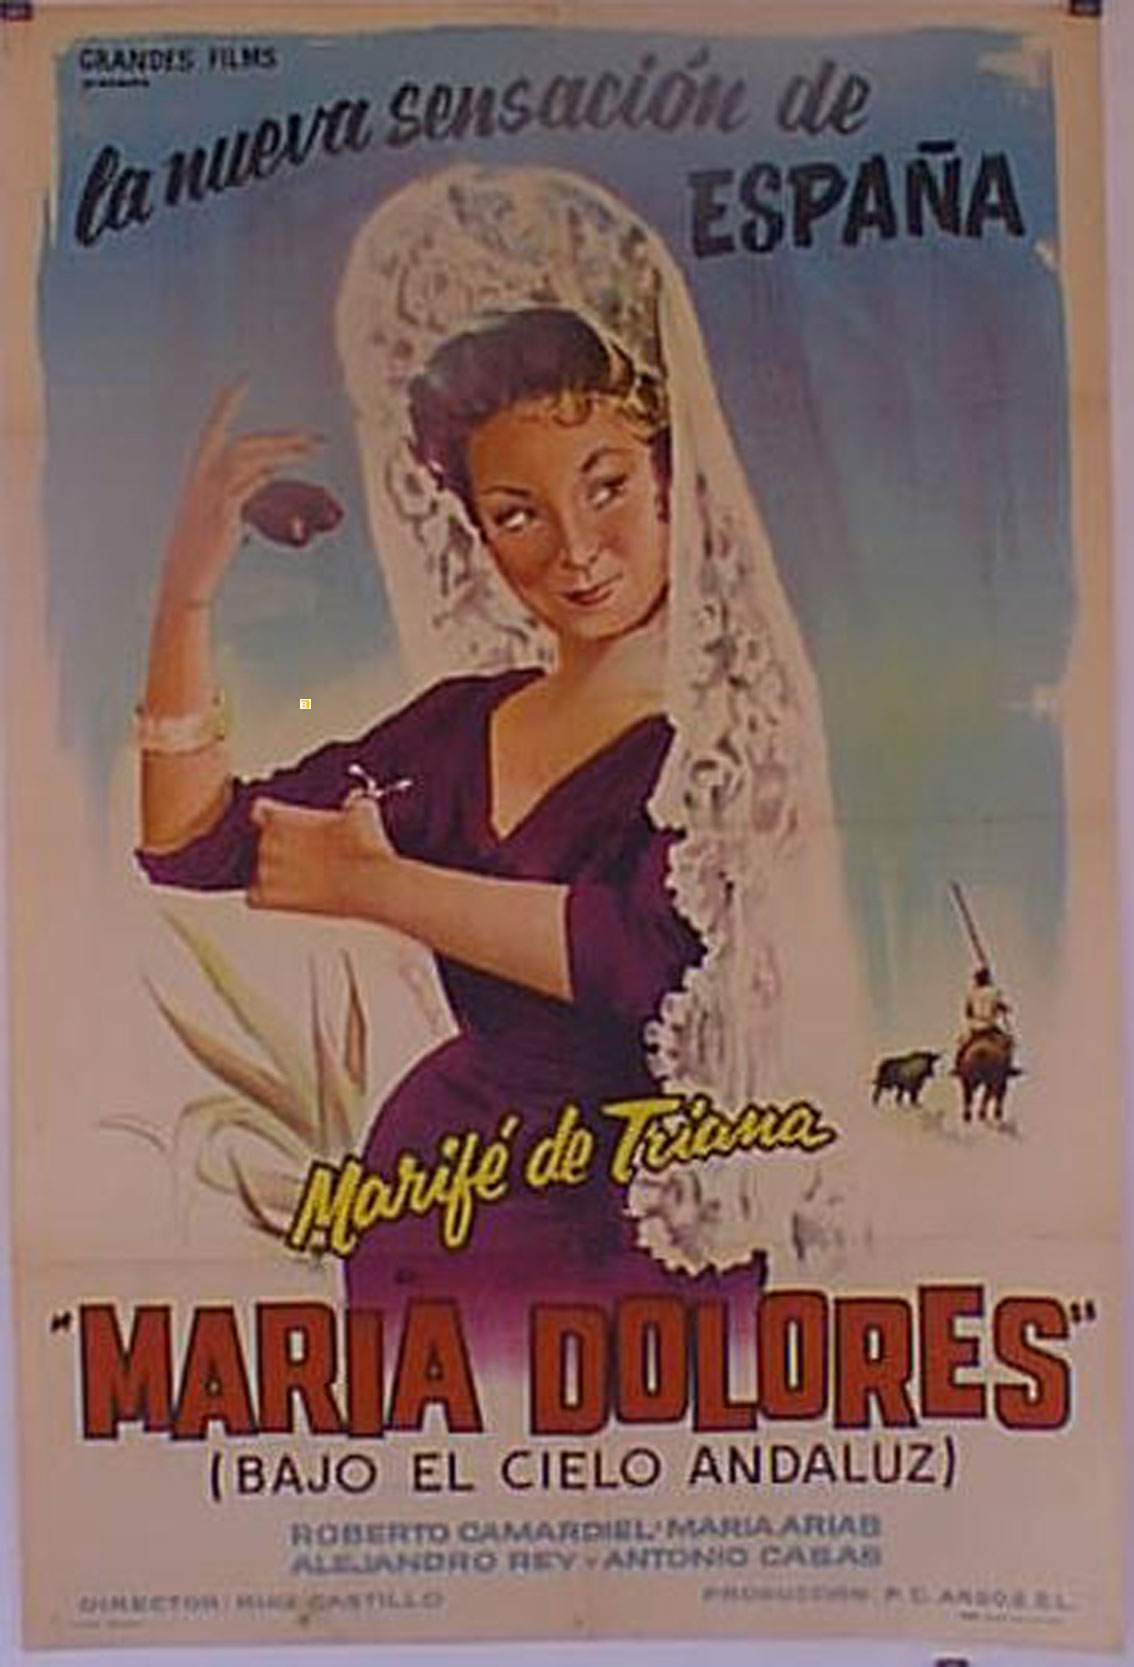 MARIA DOLORES